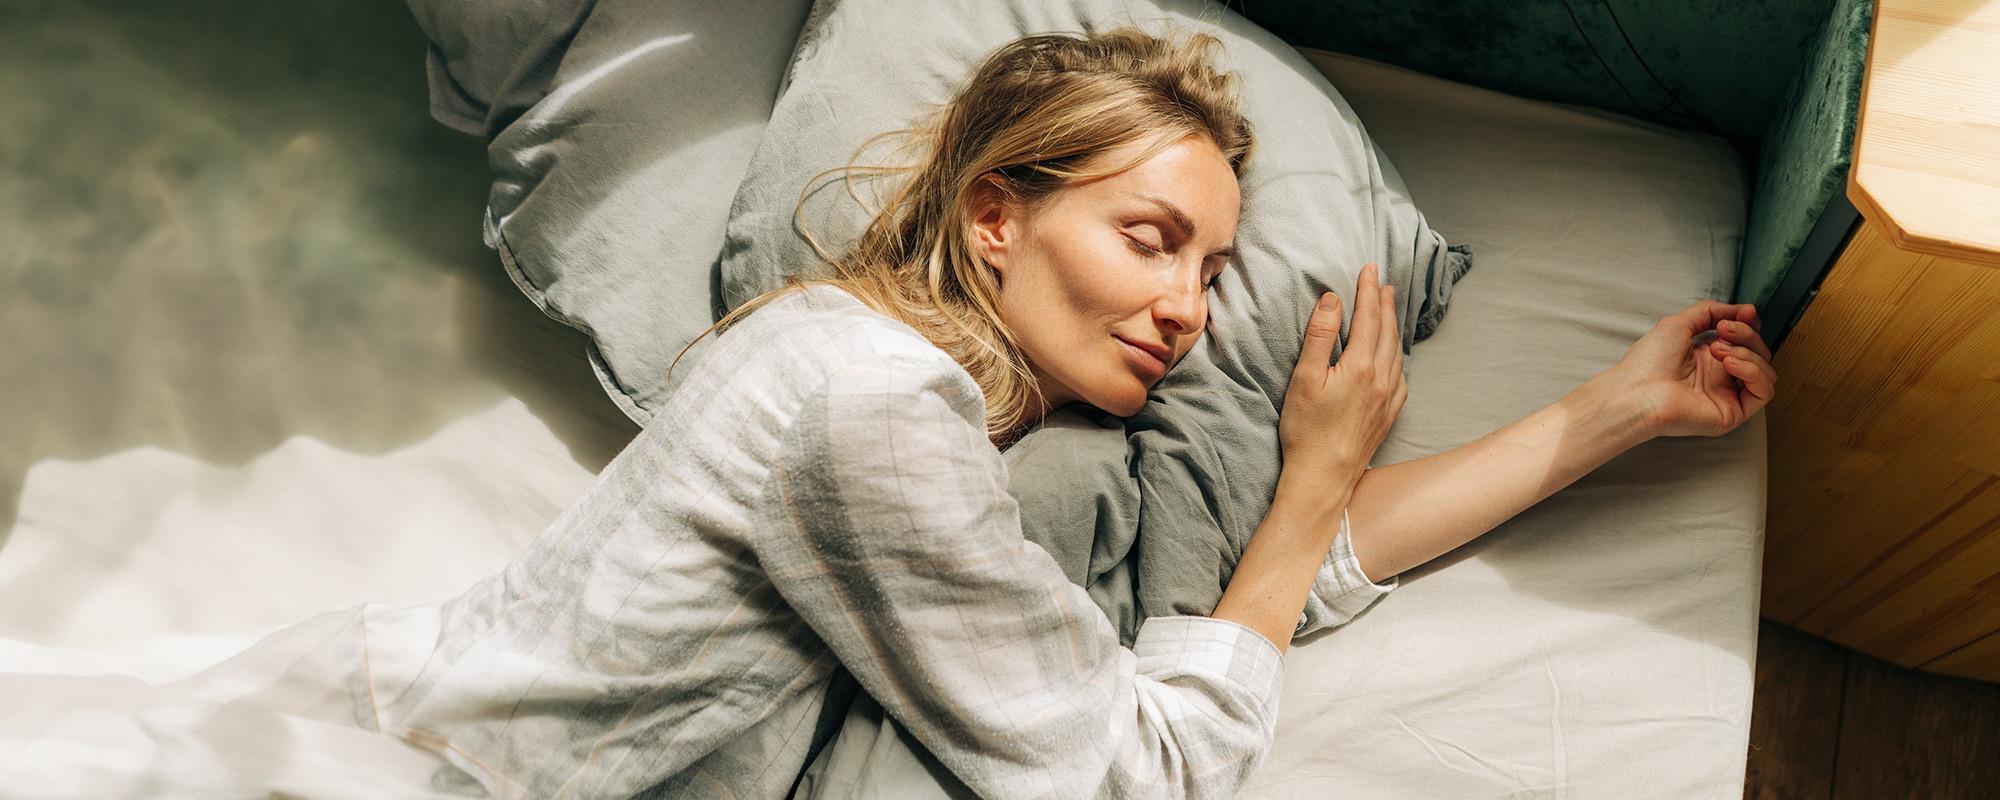 Il sonno e la sua influenza sul benessere: l'Importanza di riposare bene